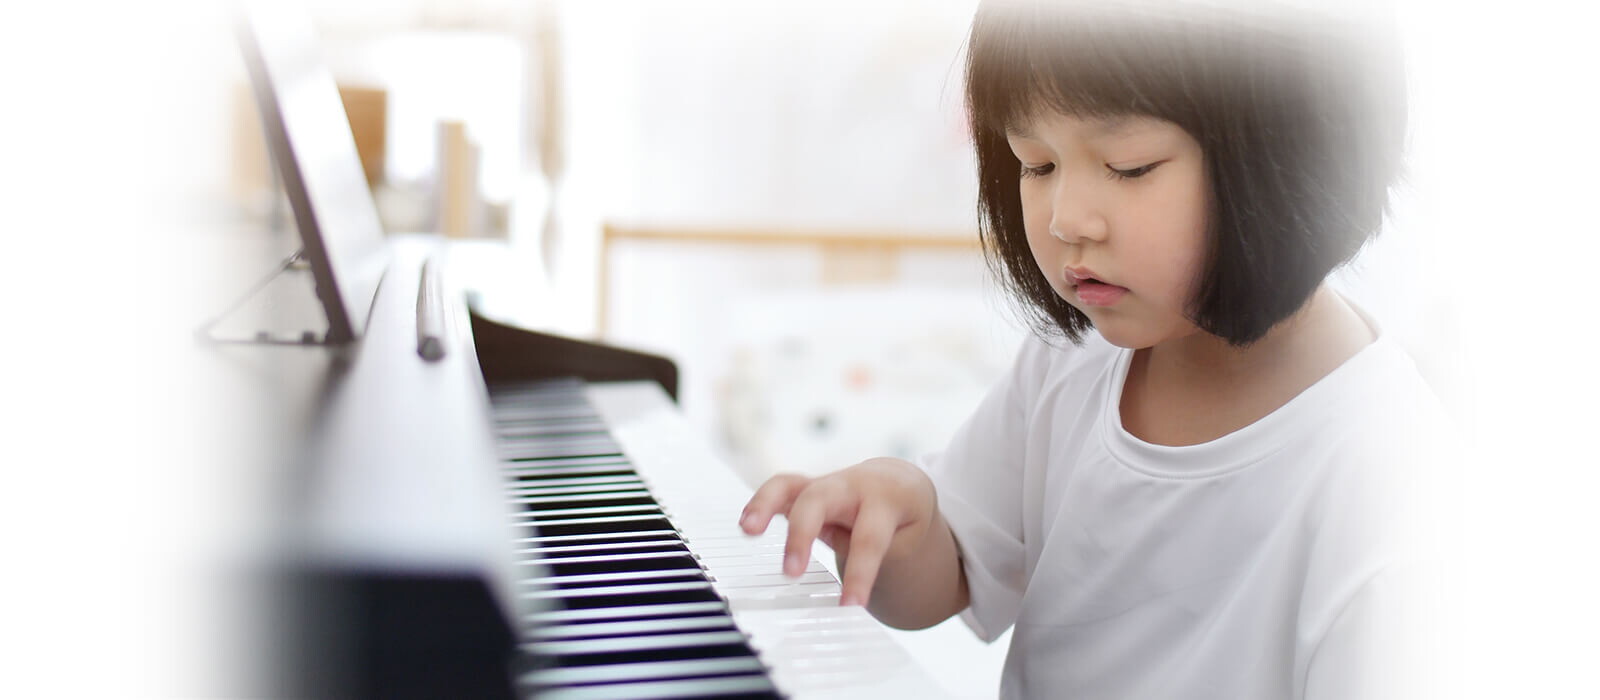 Si Kecil dan Musik: Manfaat Stimulasi Musik dalam Perkembangan Anak